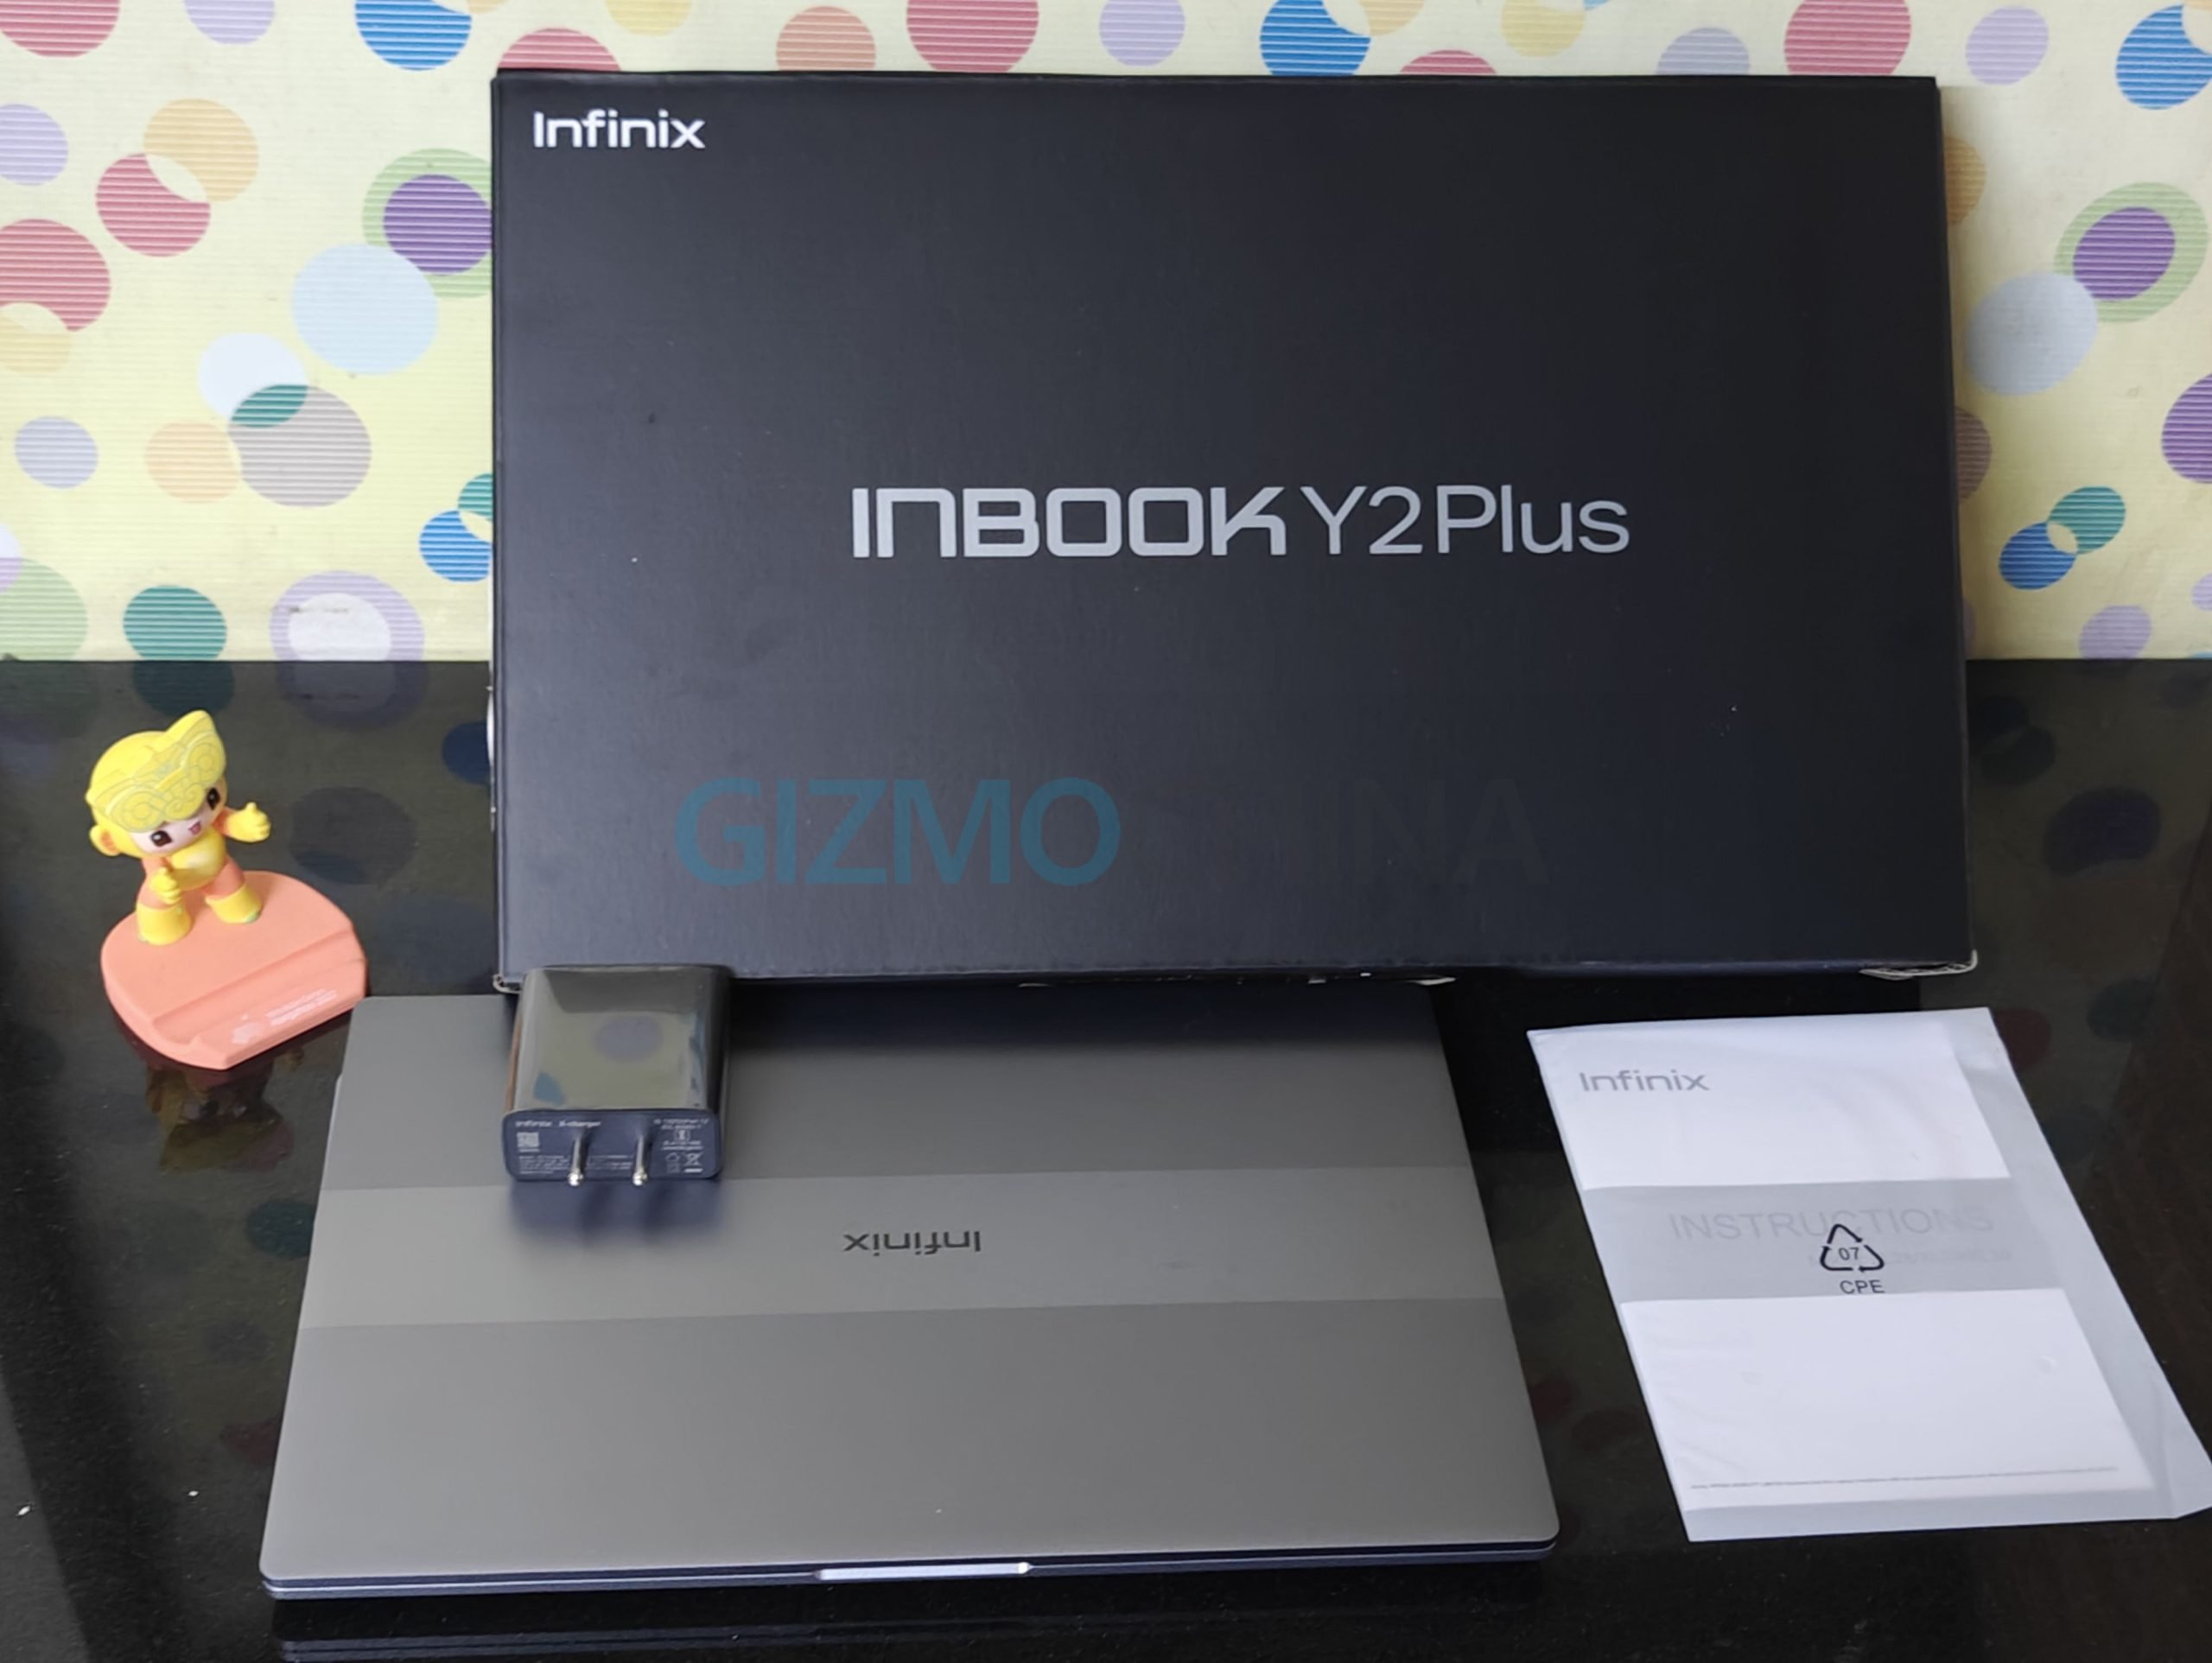 Infinix Inbook Y2 Plus